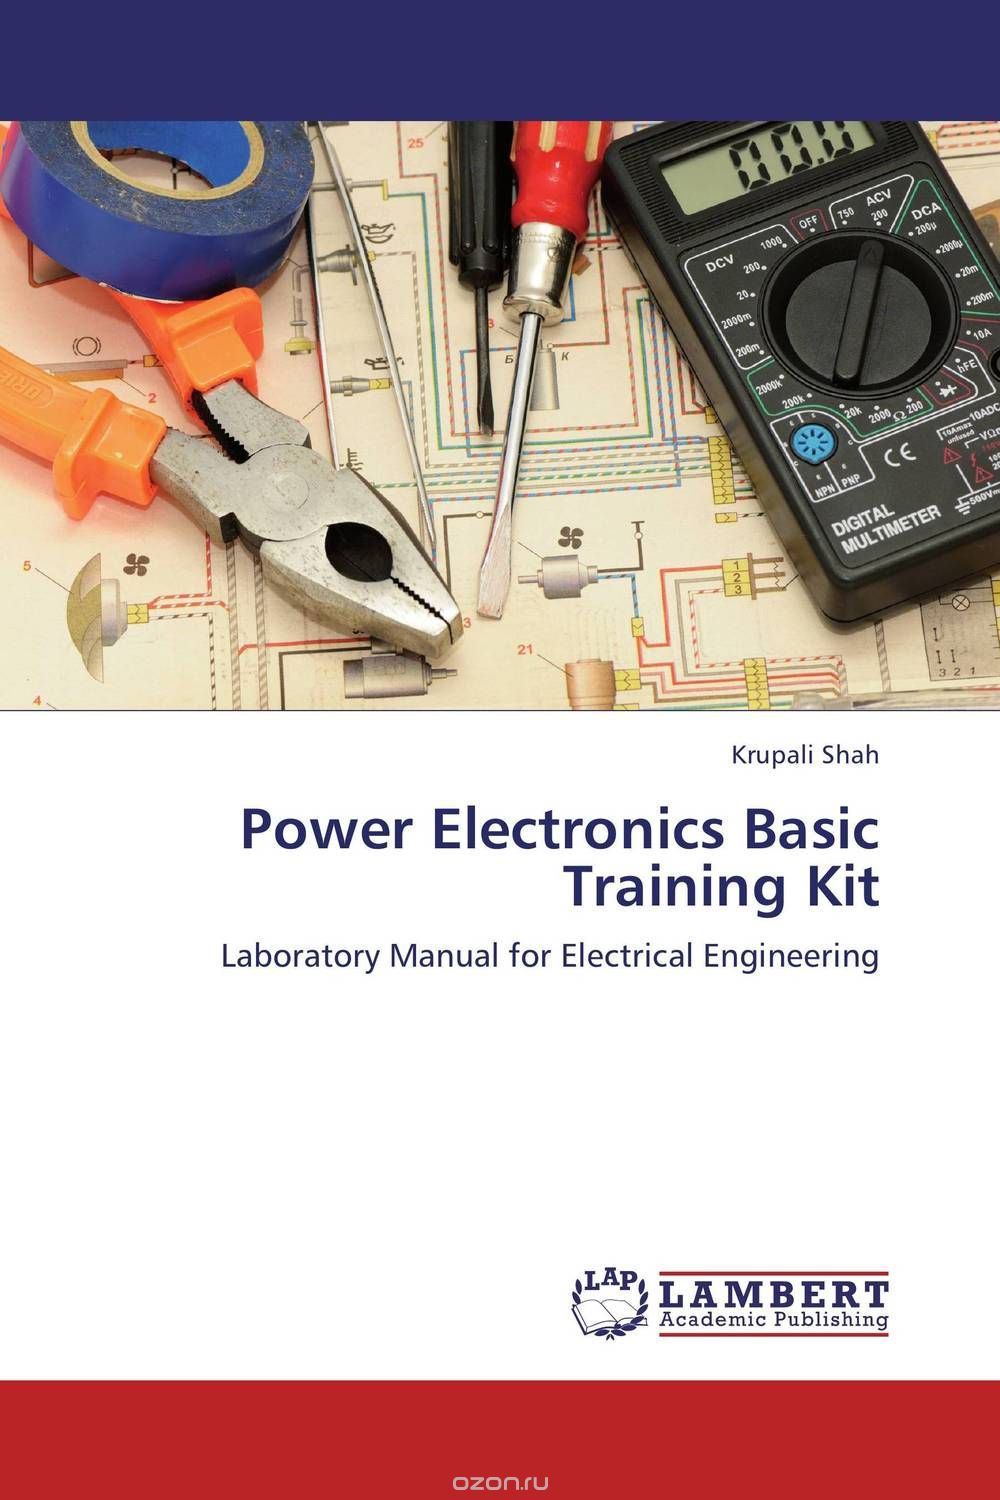 Power Electronics Basic Training Kit